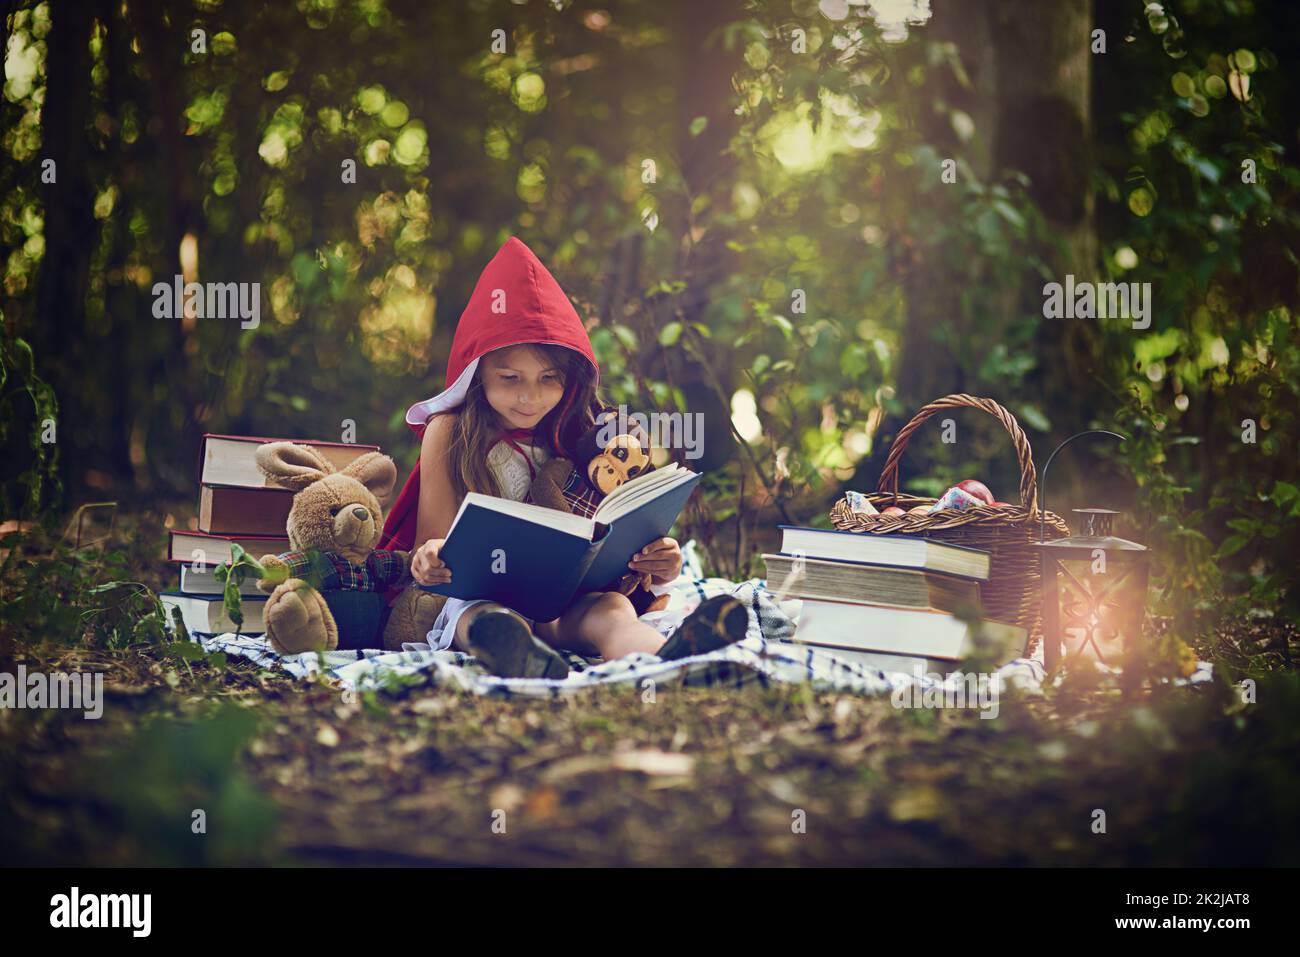 Bücher können uns zu den magischsten Orten transportieren. Aufnahme eines kleinen Mädchens in einem roten Umhang, das ein Buch mit ihren Spielsachen im Wald liest. Stockfoto